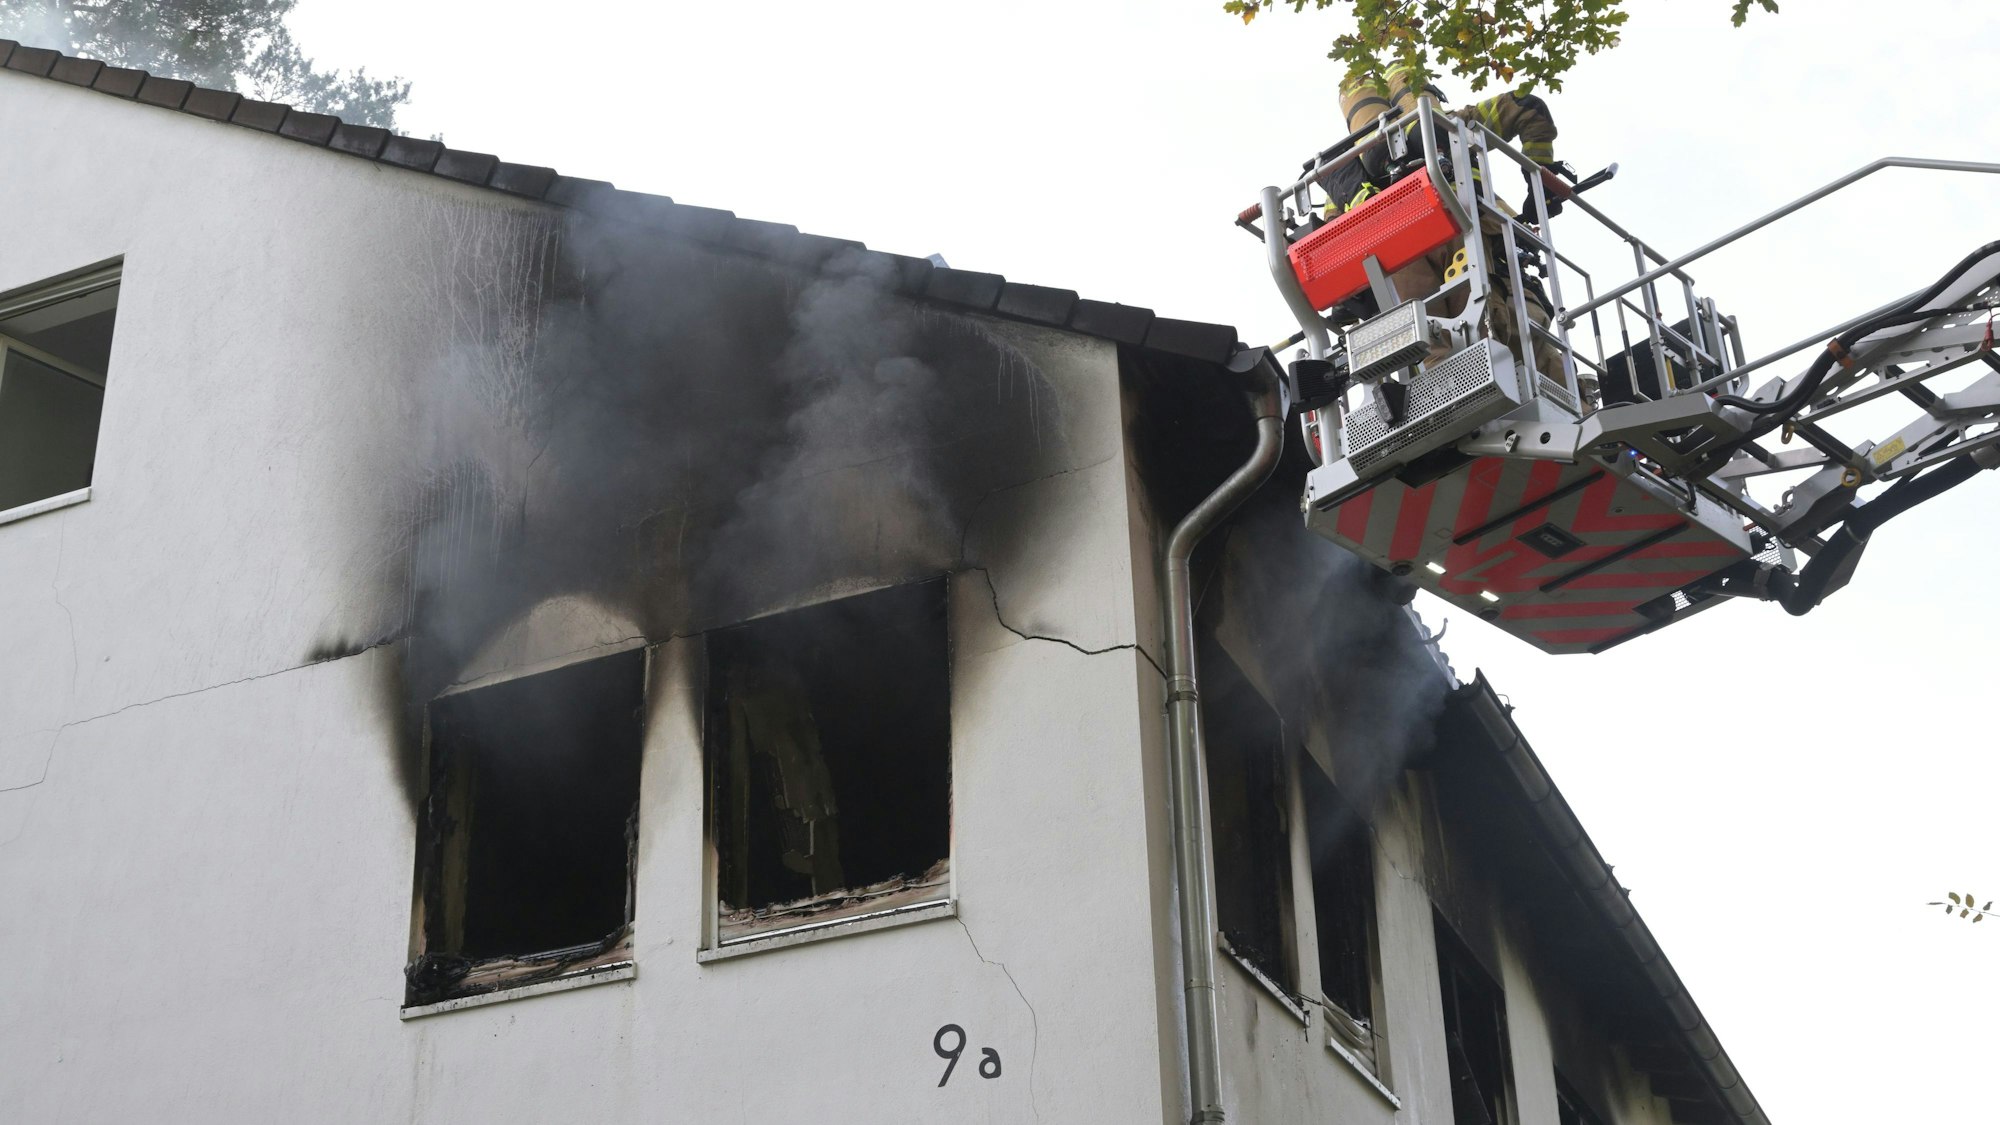 Ein Feuerwehrmann steht in einem Korb auf der Feuerwehrleiter. Die Hausfassade ist an mehreren Fenstern von dem Feuer zerstört.